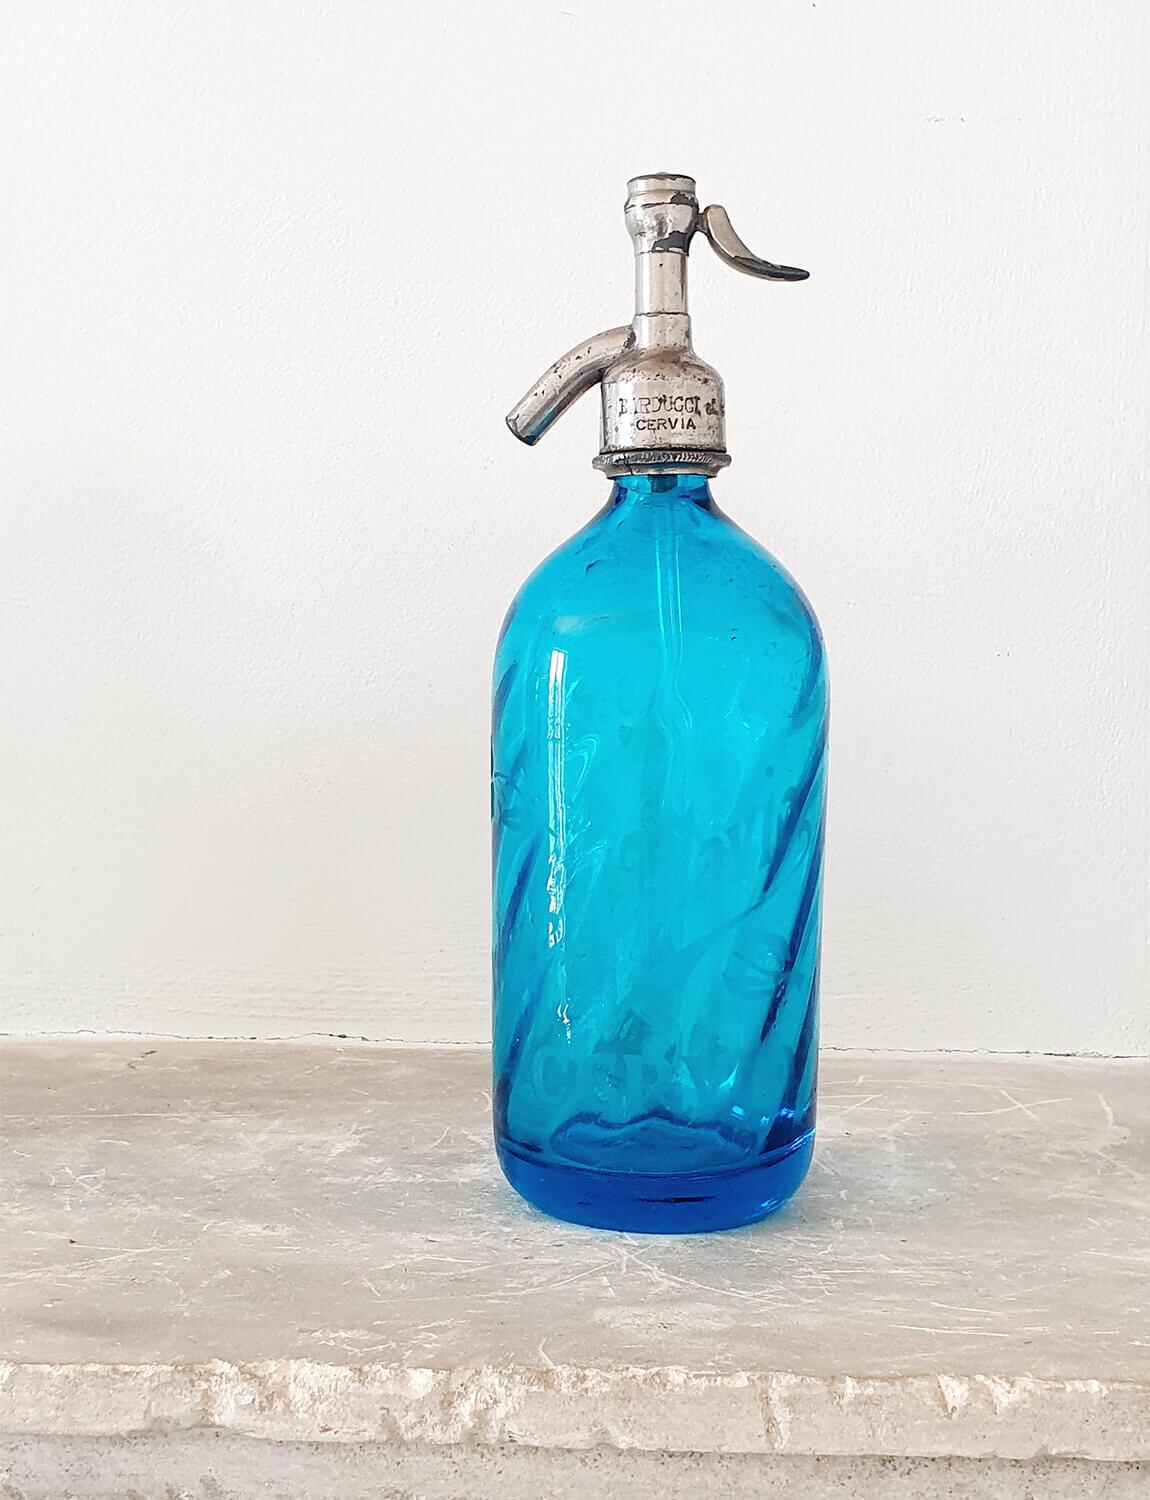 Blaue italienische Glas-Sodaflasche, die ursprünglich in einer italienischen Bar in Cervia verwendet wurde. Für sein Alter in gutem Zustand. Auf der Flasche steht in Milchglas der Schriftzug Ottavia Cerva - der Name und der Ort der Bar, in der er